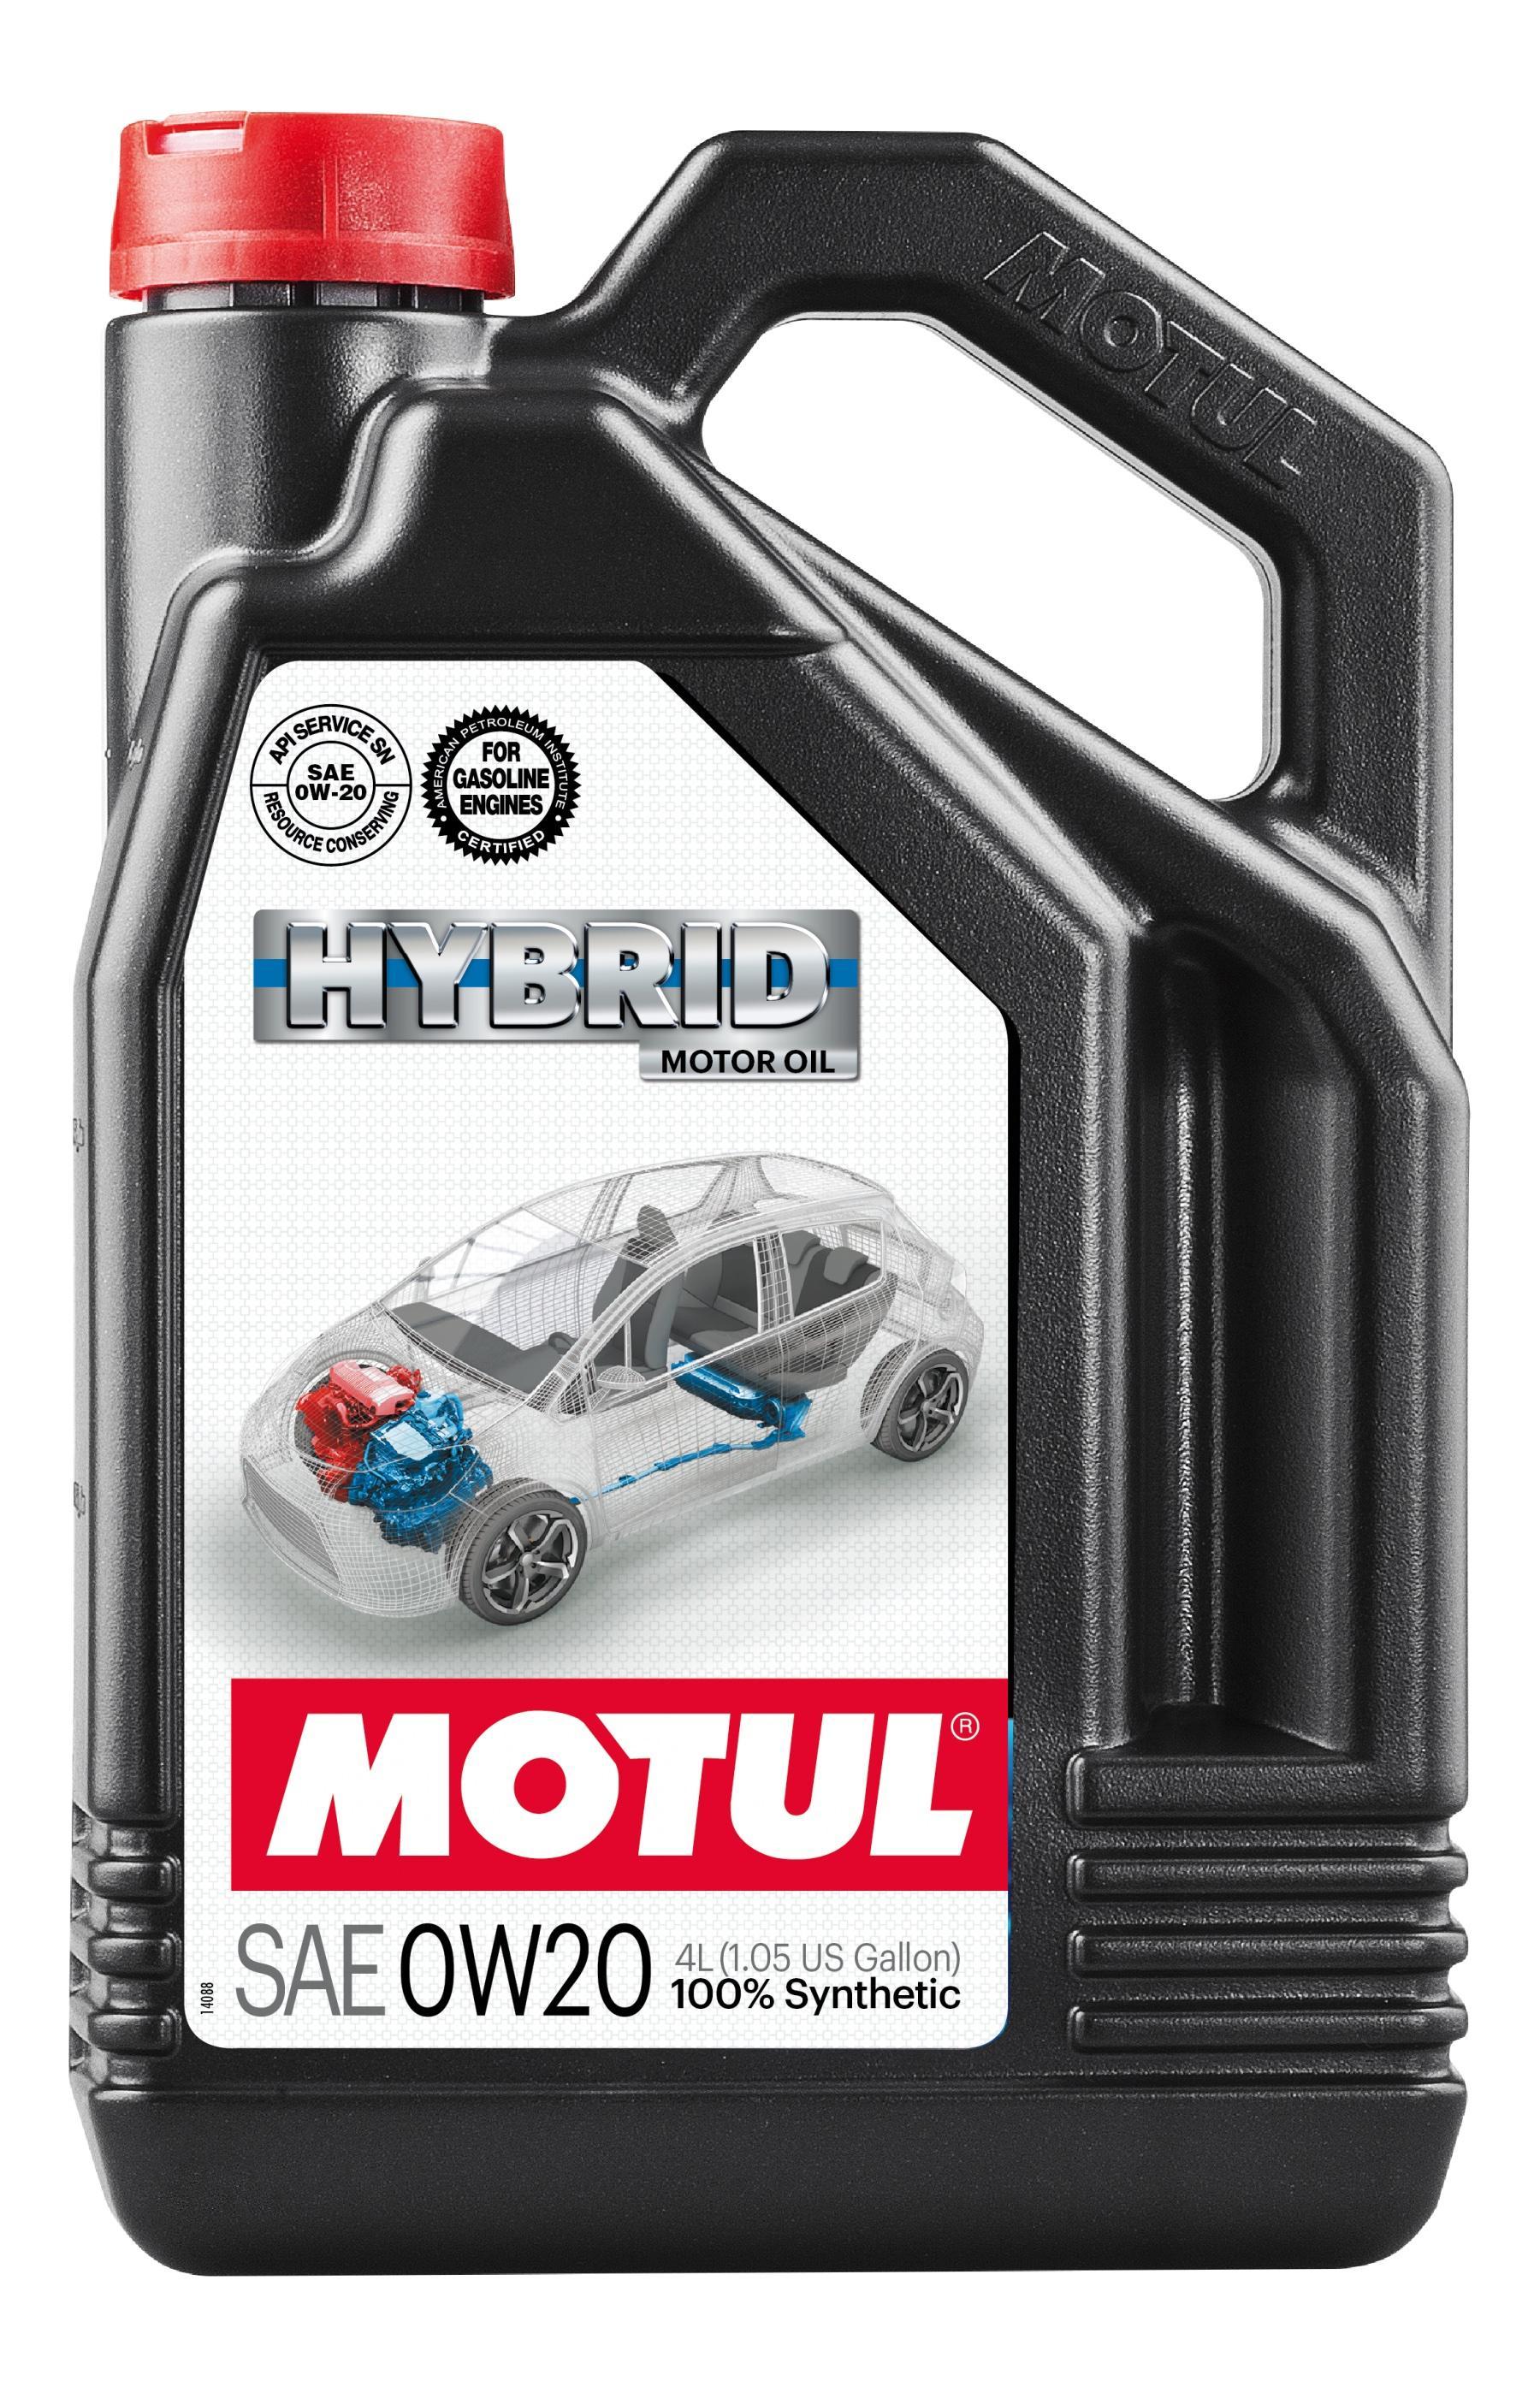 Моторное масло MOTUL Hybrid, 0W20 4 литра 0W-20 (333107 / 107142)